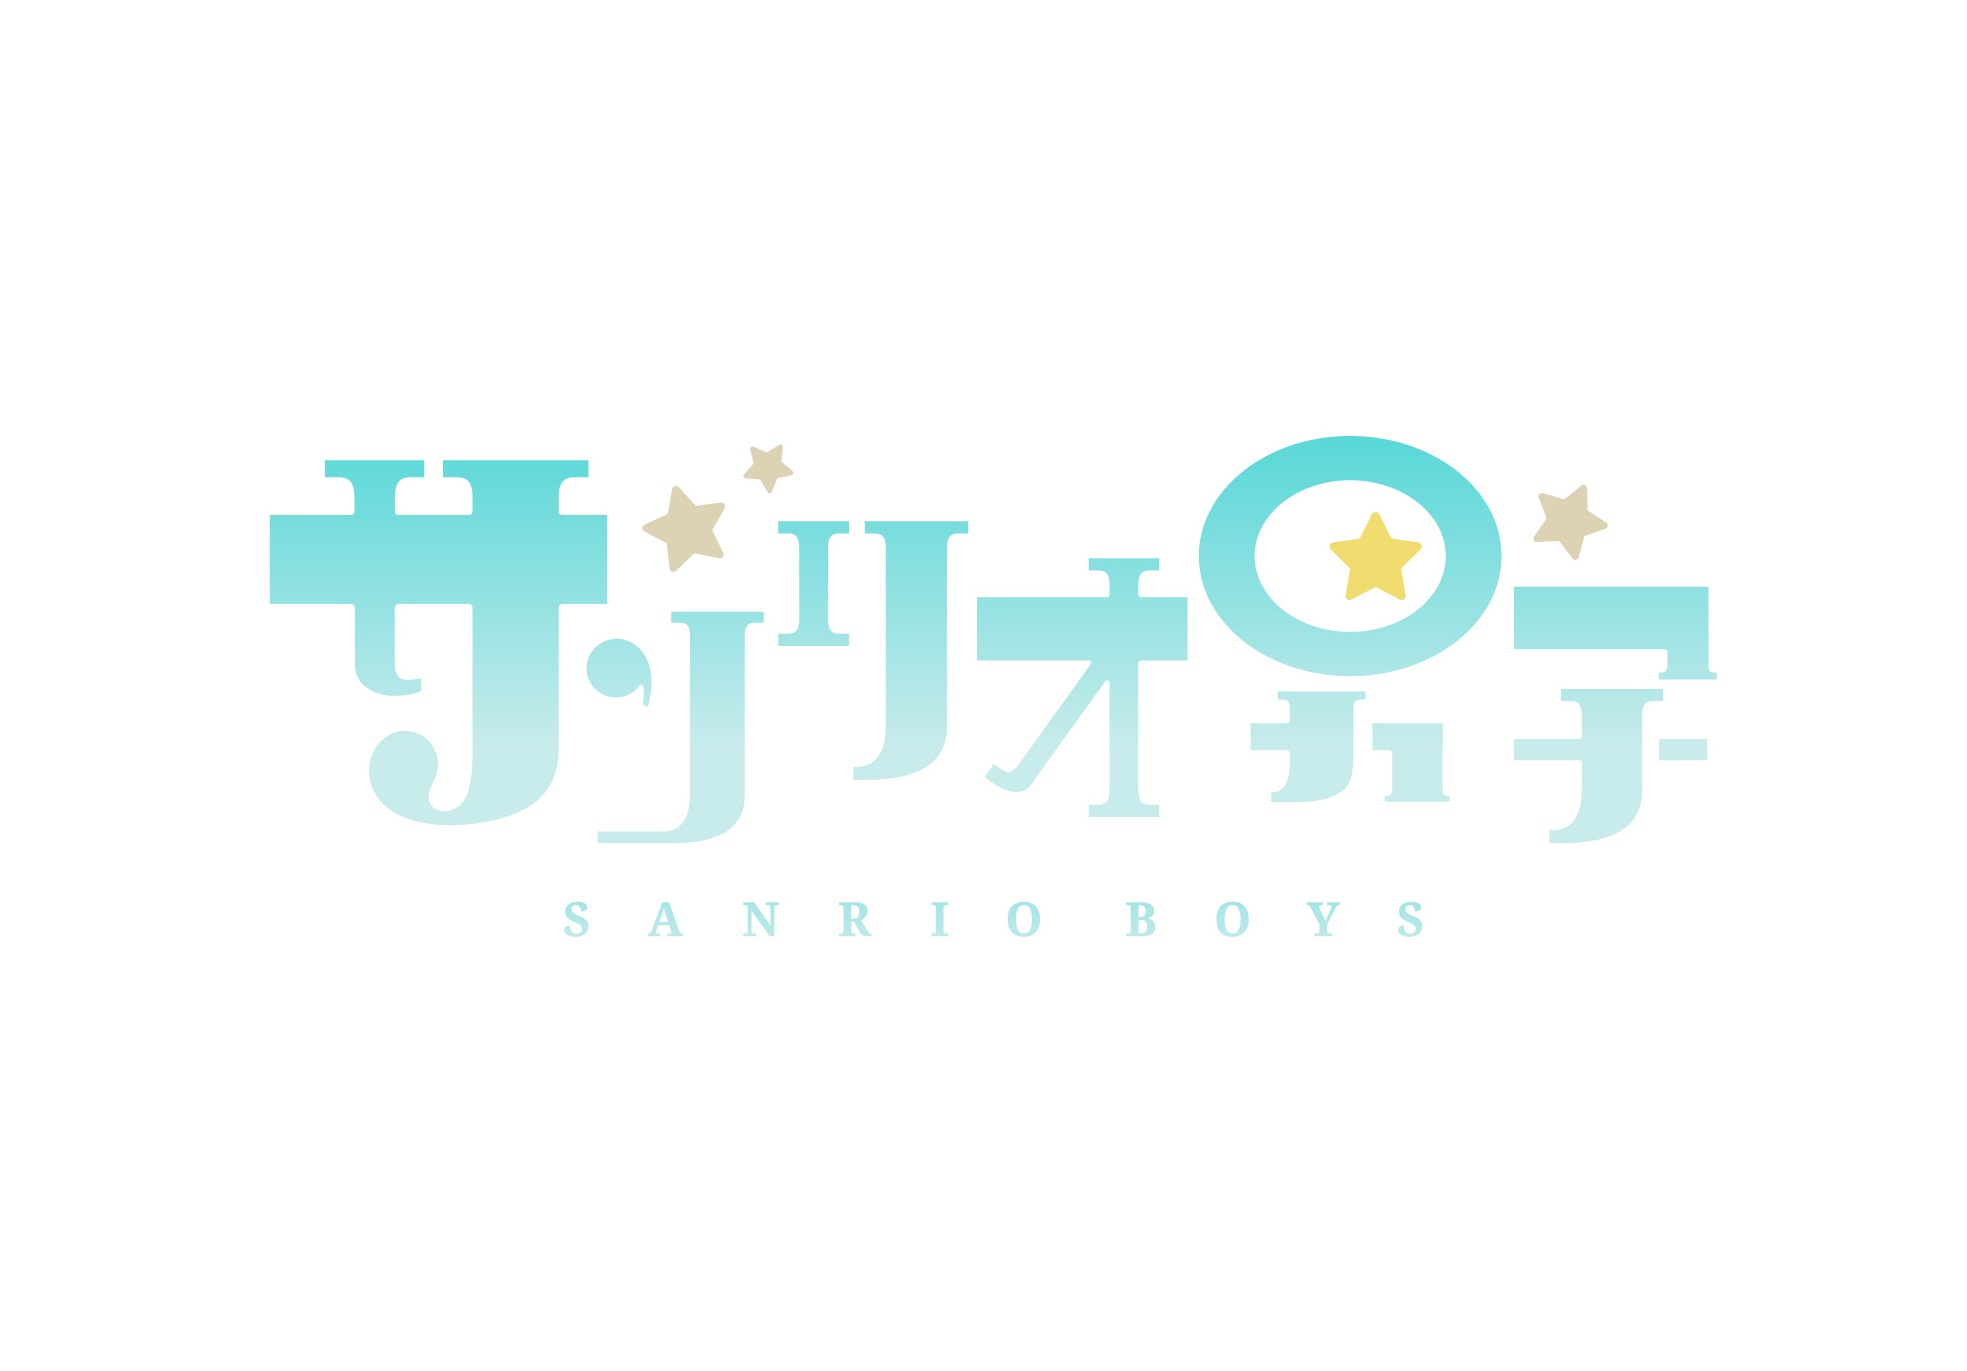 サンリオ男子 アニメジャパンポニーキャニオンステージに出展決定 アニメイトタイムズ